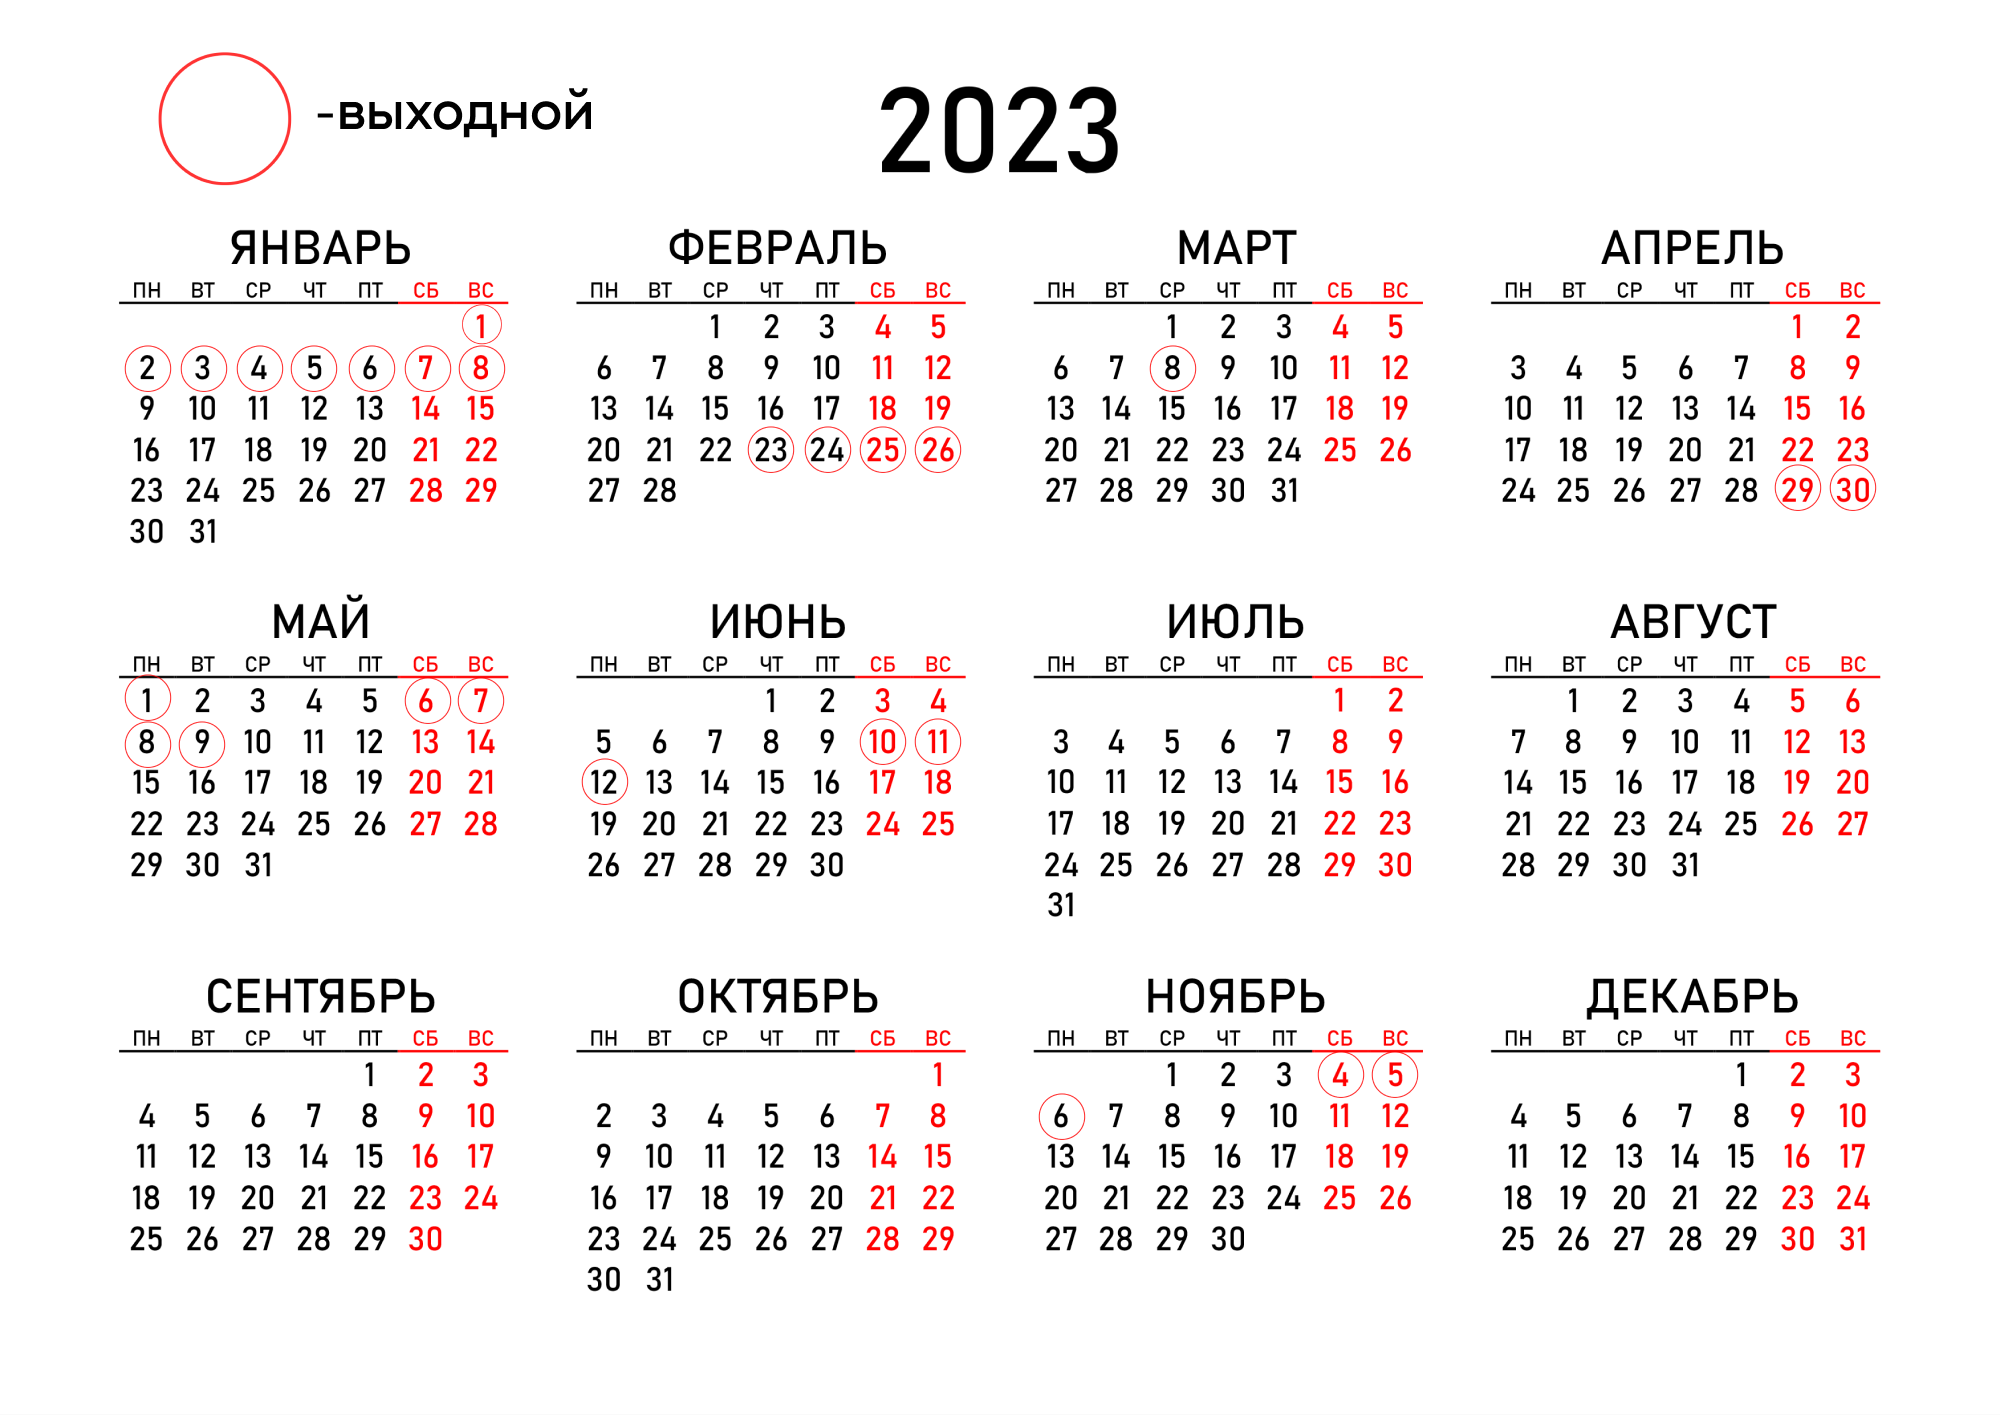 Праздники 2022 официальные выходные календарь. Календарь 2022 года с праздничными днями и выходными днями Россия. Выходные и праздничные дни в 2022 году. Календарь выходных и праздничных дней в 2022 году. Календарь на май 2022 года с праздничными днями и выходными.